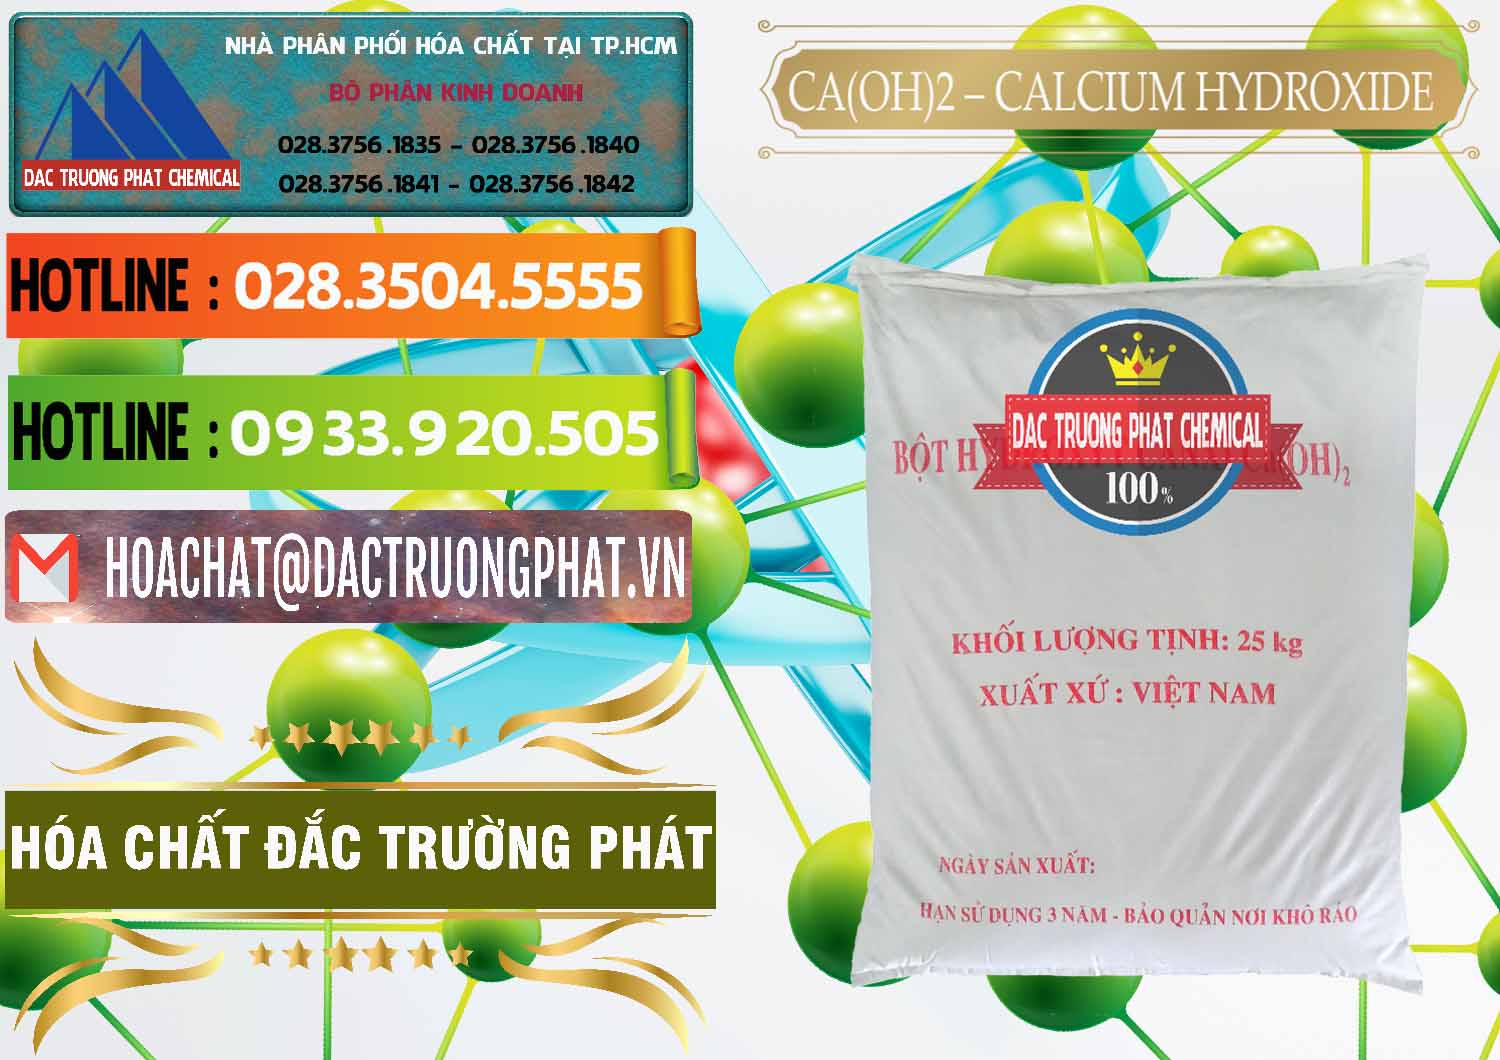 Công ty chuyên kinh doanh & bán Ca(OH)2 - Calcium Hydroxide Việt Nam - 0186 - Cty cung ứng và bán hóa chất tại TP.HCM - cungcaphoachat.com.vn